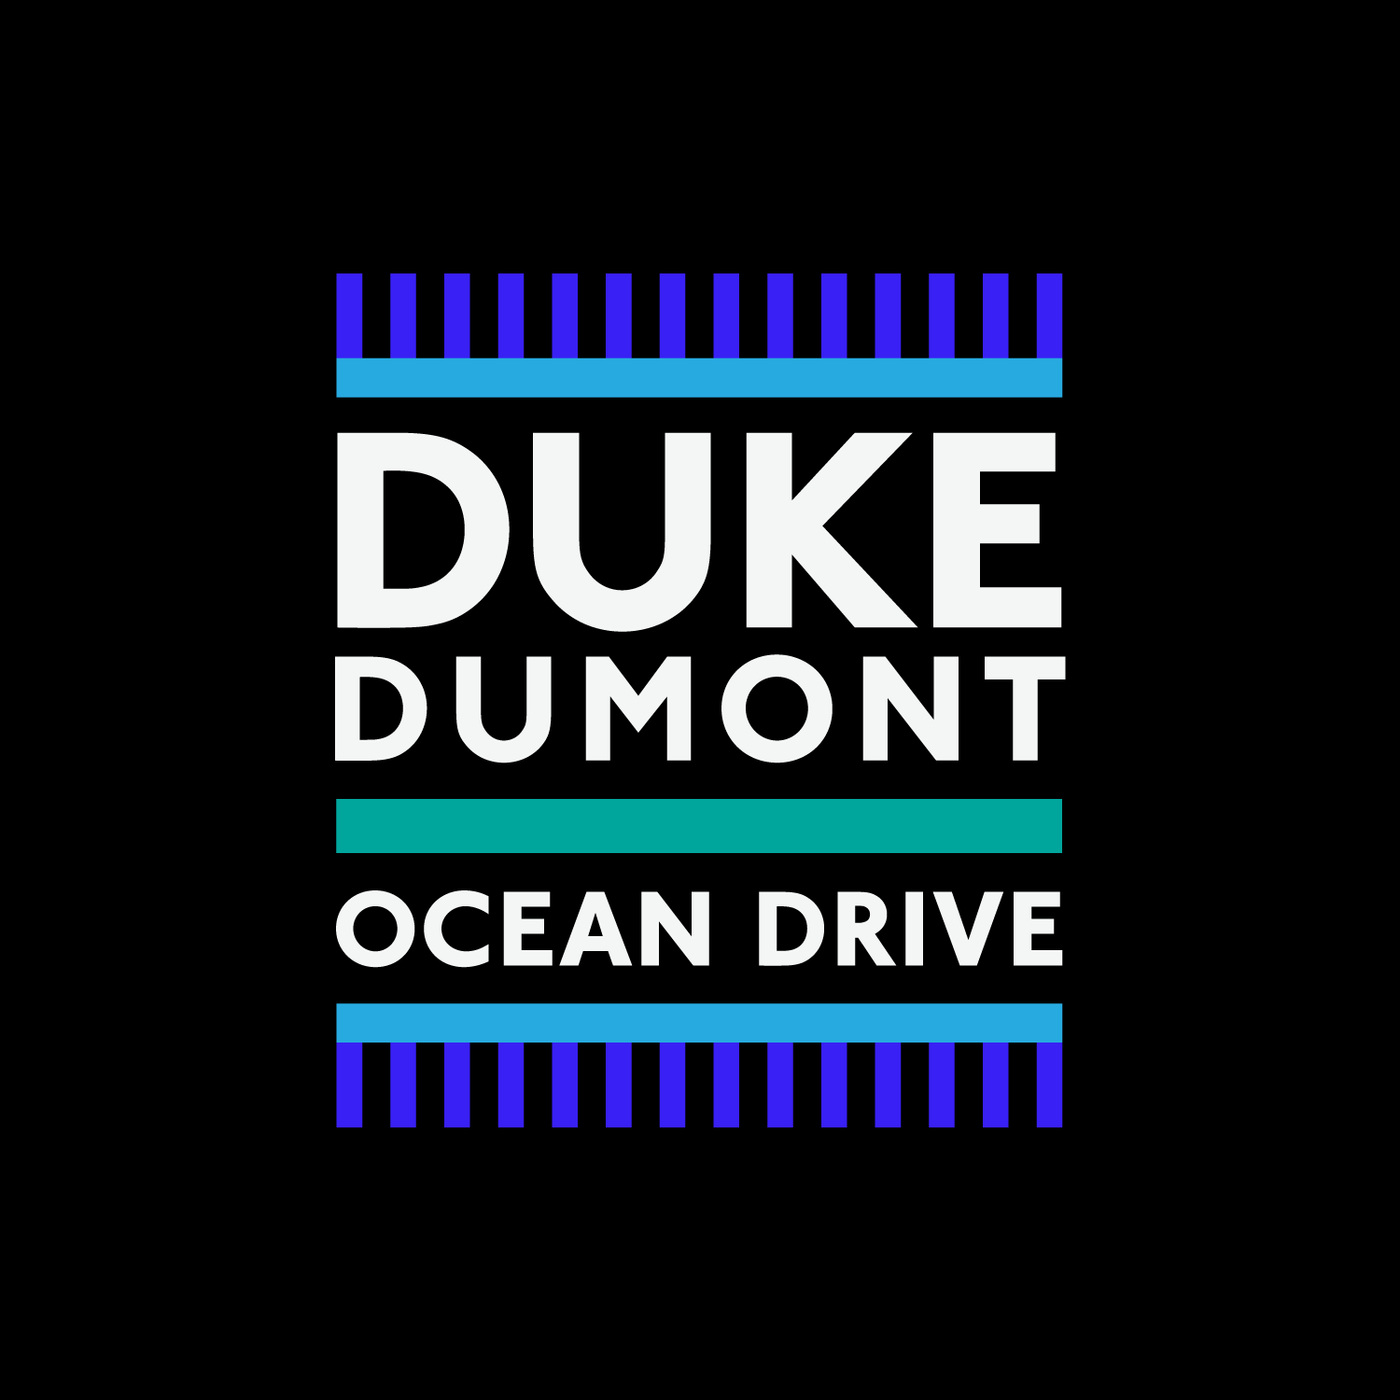 Art for Ocean Drive by Duke Dumont